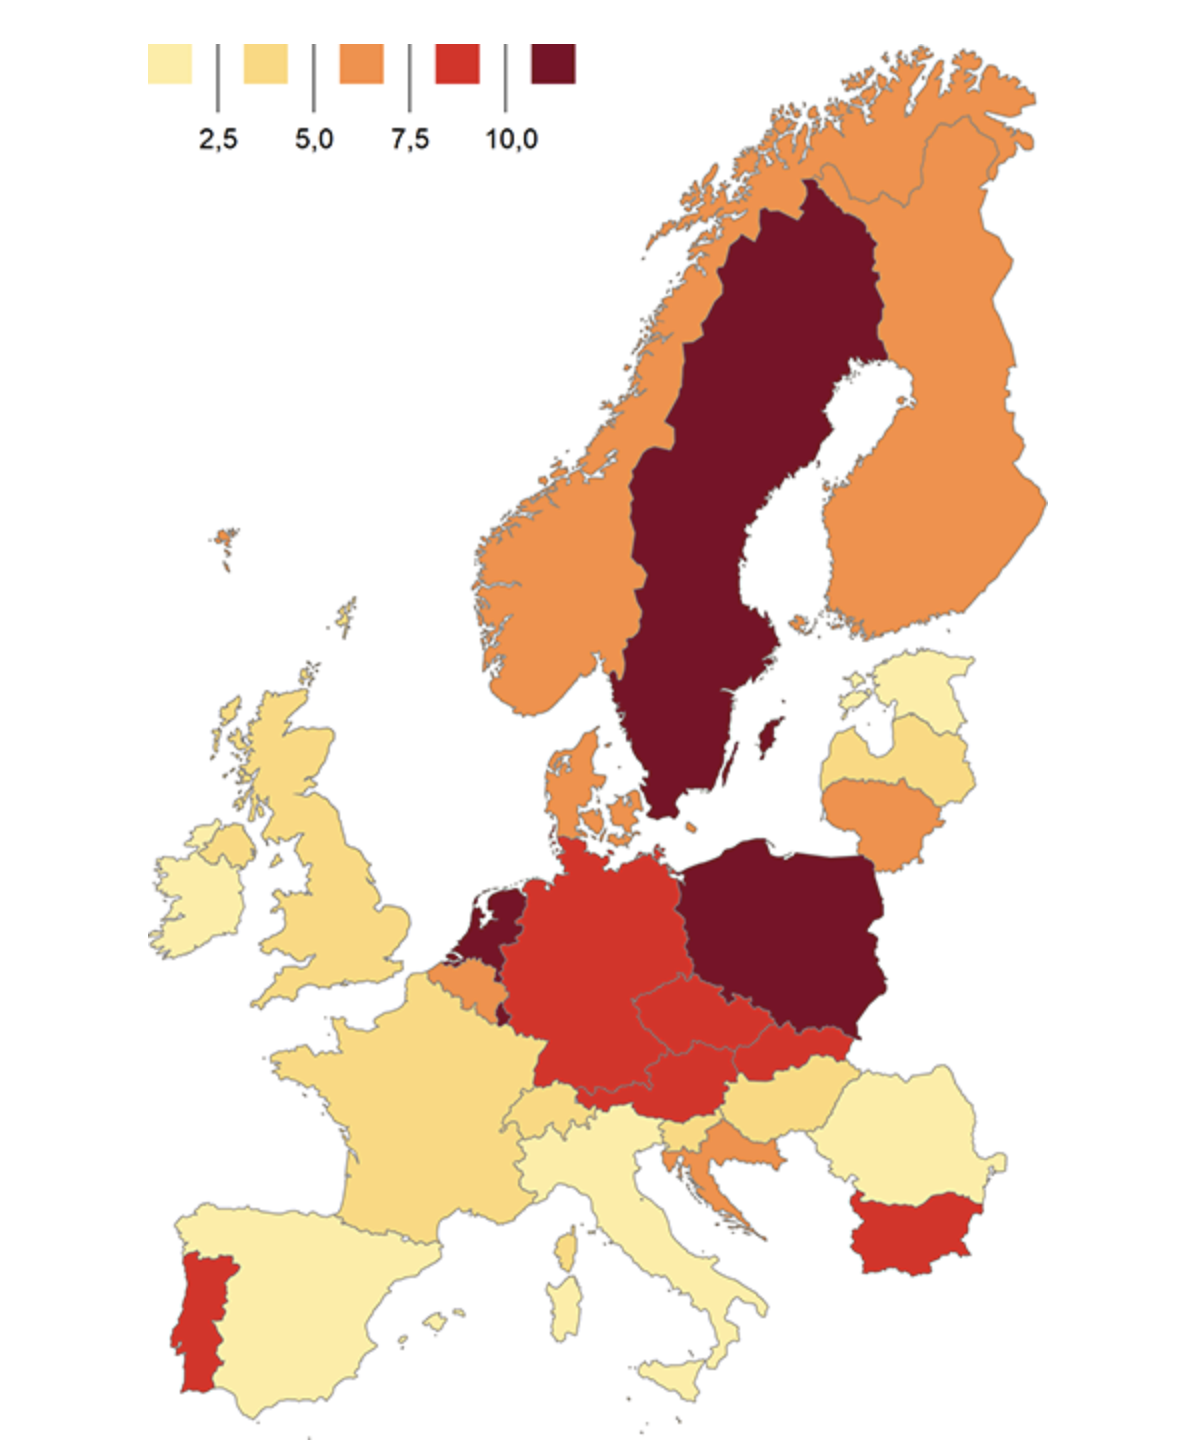 Woningprijsontwikkeling over 2020 voor Nederland en Europa (niet gecorrigeerd voor inflatie). Bron: Calcasa